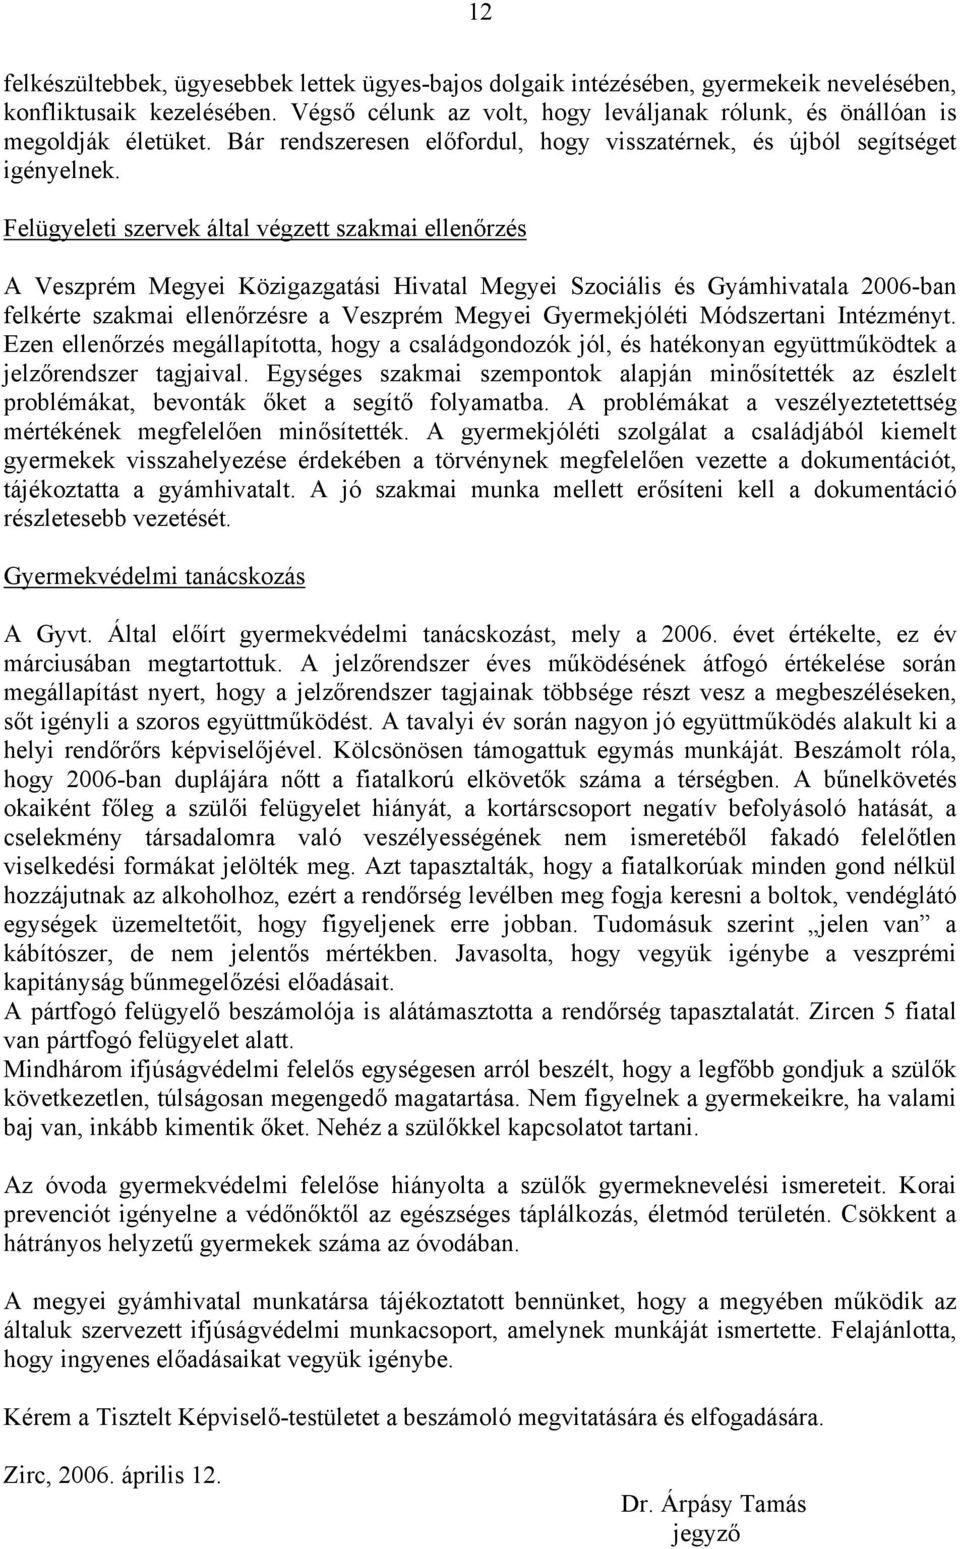 Felügyeleti szervek által végzett szakmai ellenőrzés A Veszprém Megyei Közigazgatási Hivatal Megyei Szociális és Gyámhivatala 2006-ban felkérte szakmai ellenőrzésre a Veszprém Megyei Gyermekjóléti